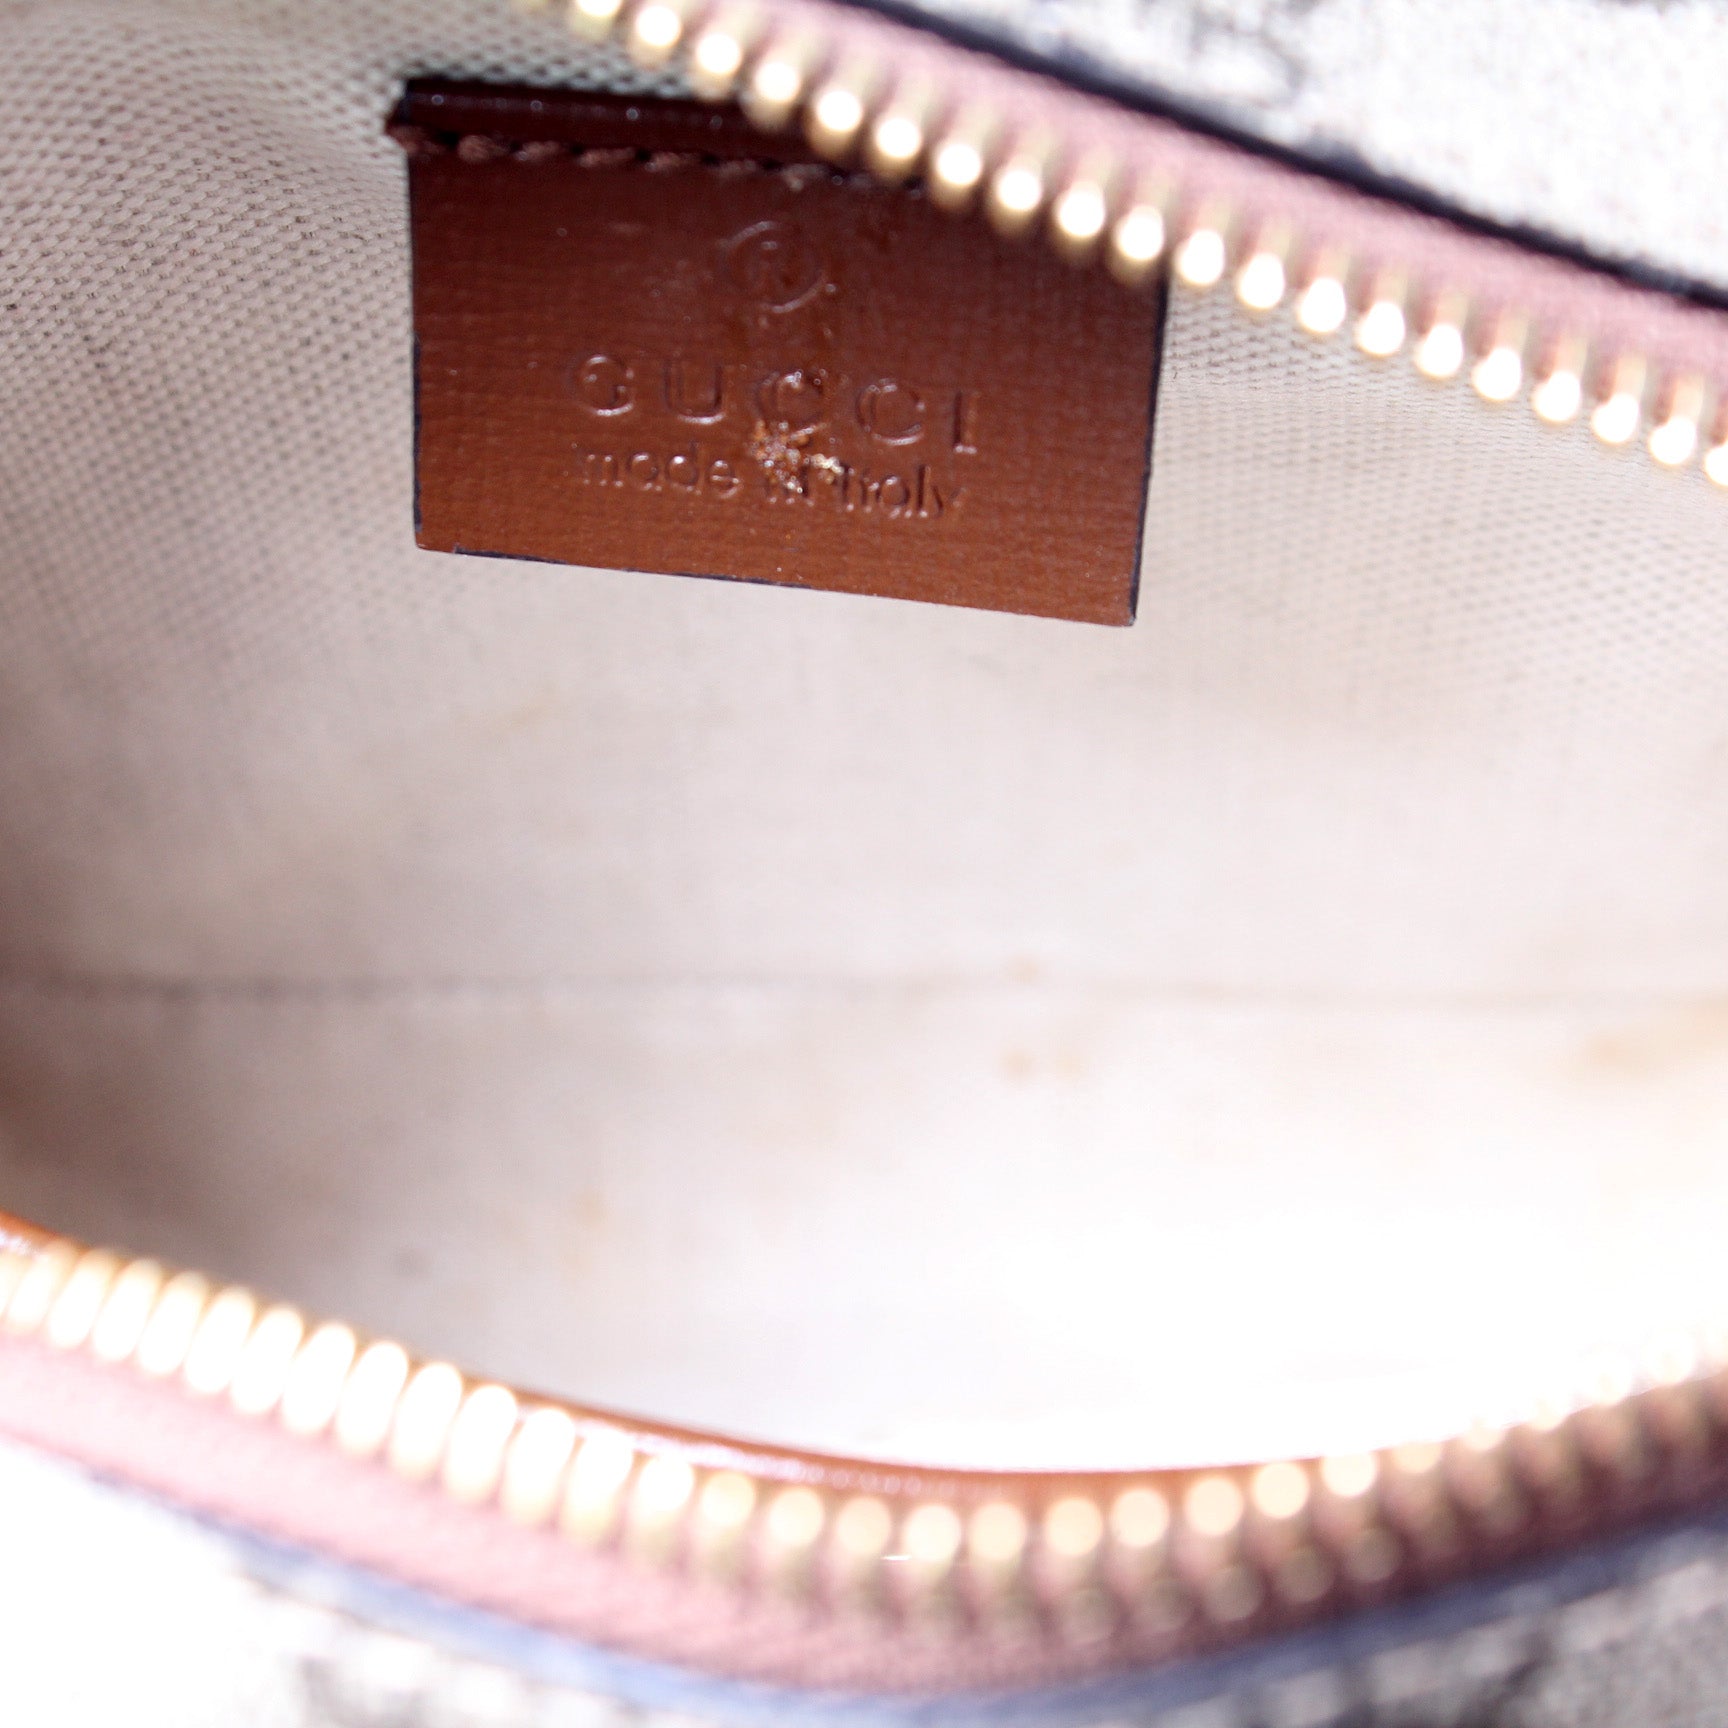 233269 GG Supreme Belt Bag – Keeks Designer Handbags